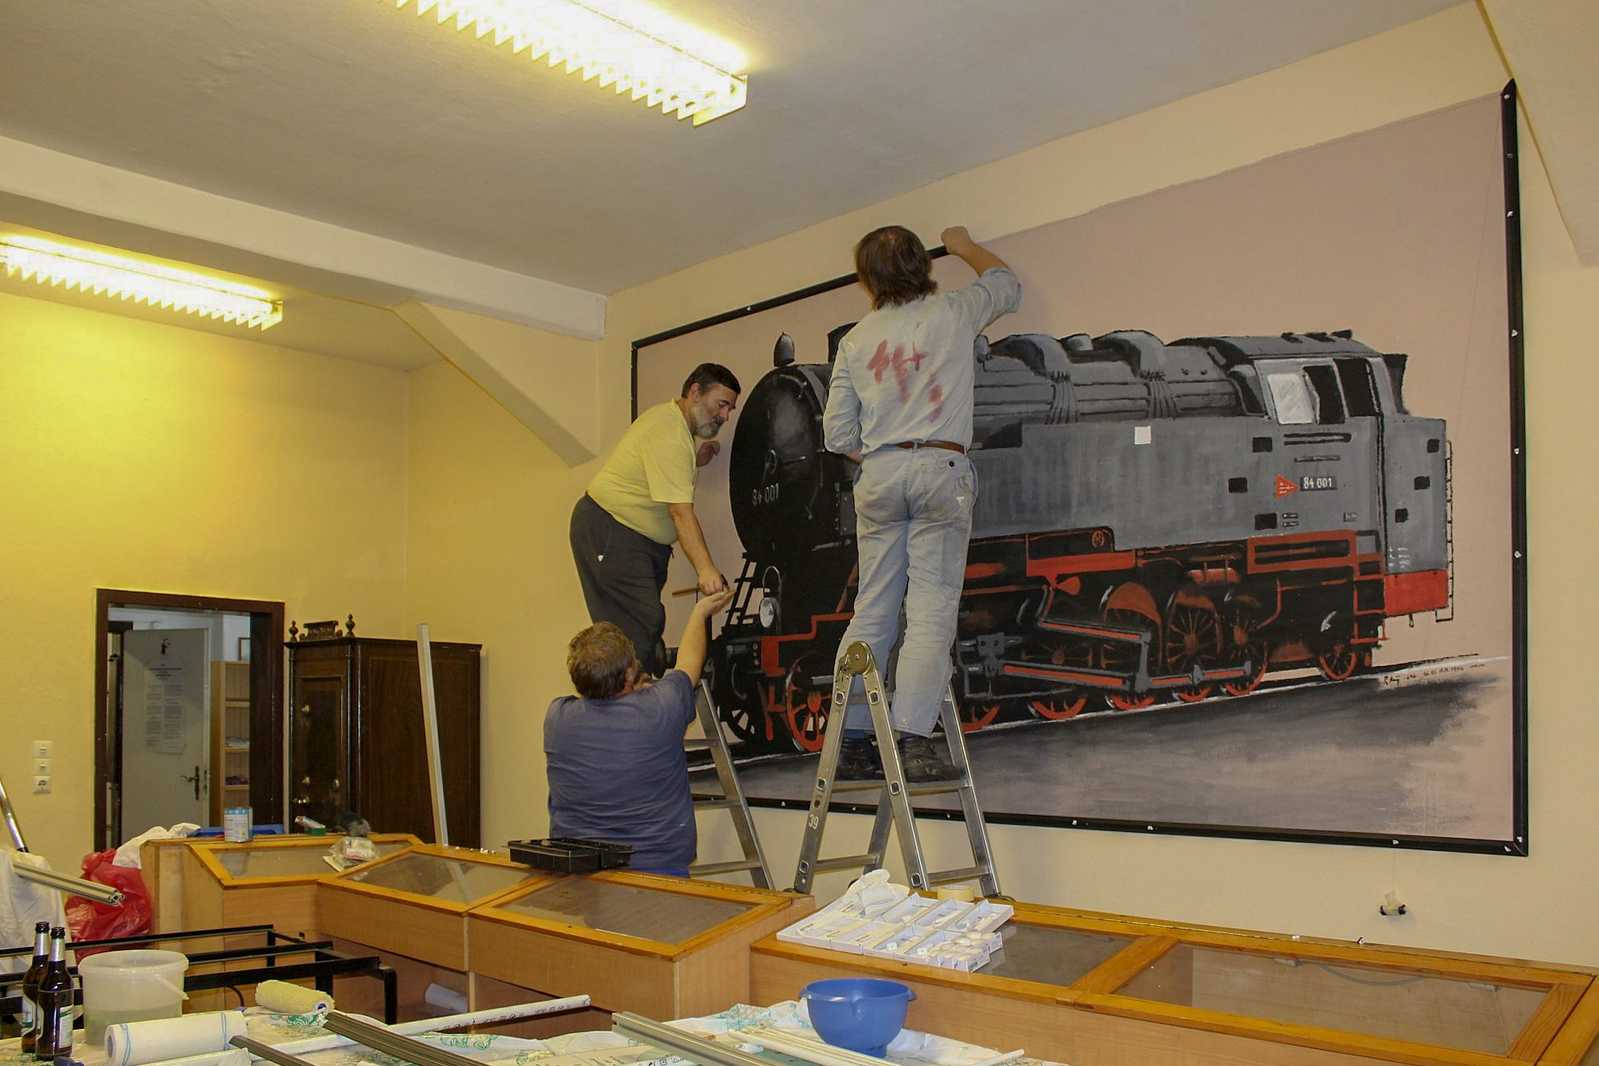 eim Sanieren des Mehrzweckraumes im Sozialgebäude des Eisenbahnmuseums Schwarzenberg galt Vorsicht: Das von Peter König stammende Wandgemälde der Lok 84 001 durfte keinen Schaden nehmen.